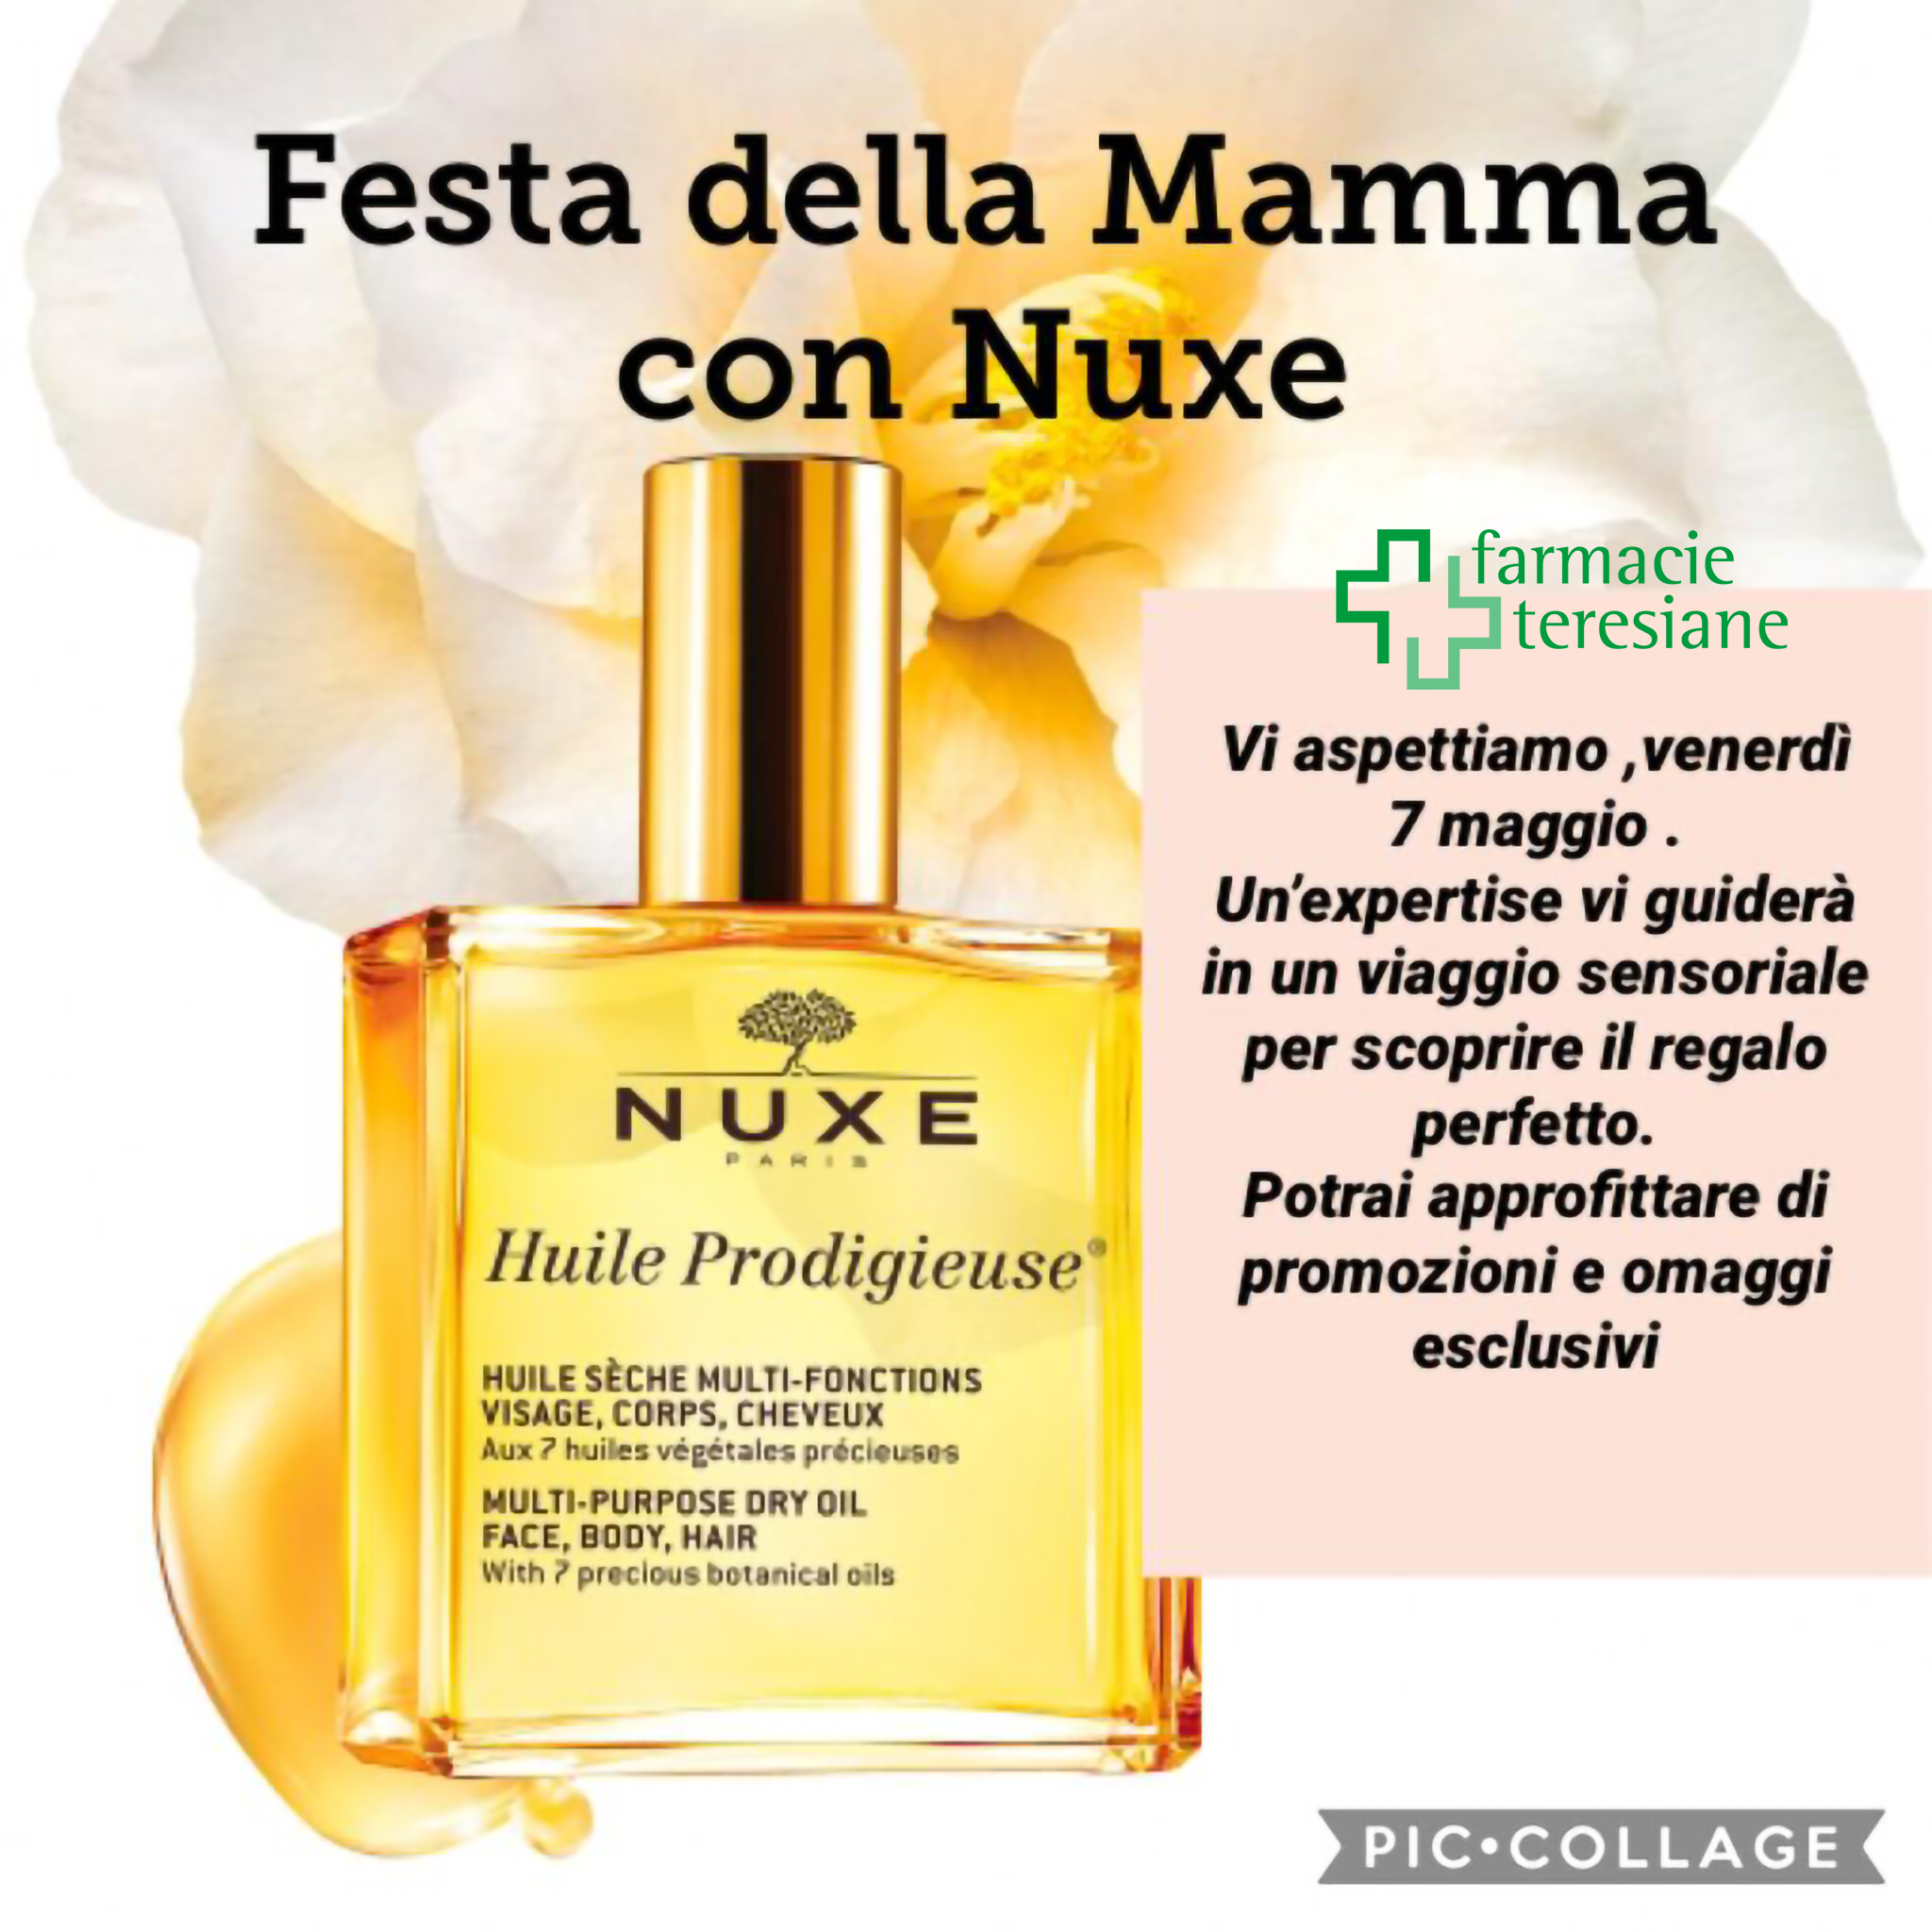 Venerdì 07 maggio dalle ore 15 Federica Amaglio, Nuxe expertise, vi accompagnerà alla scoperta delle esclusive fragranze e texture dei prodotti per il viso e per il corpo Nuxe.